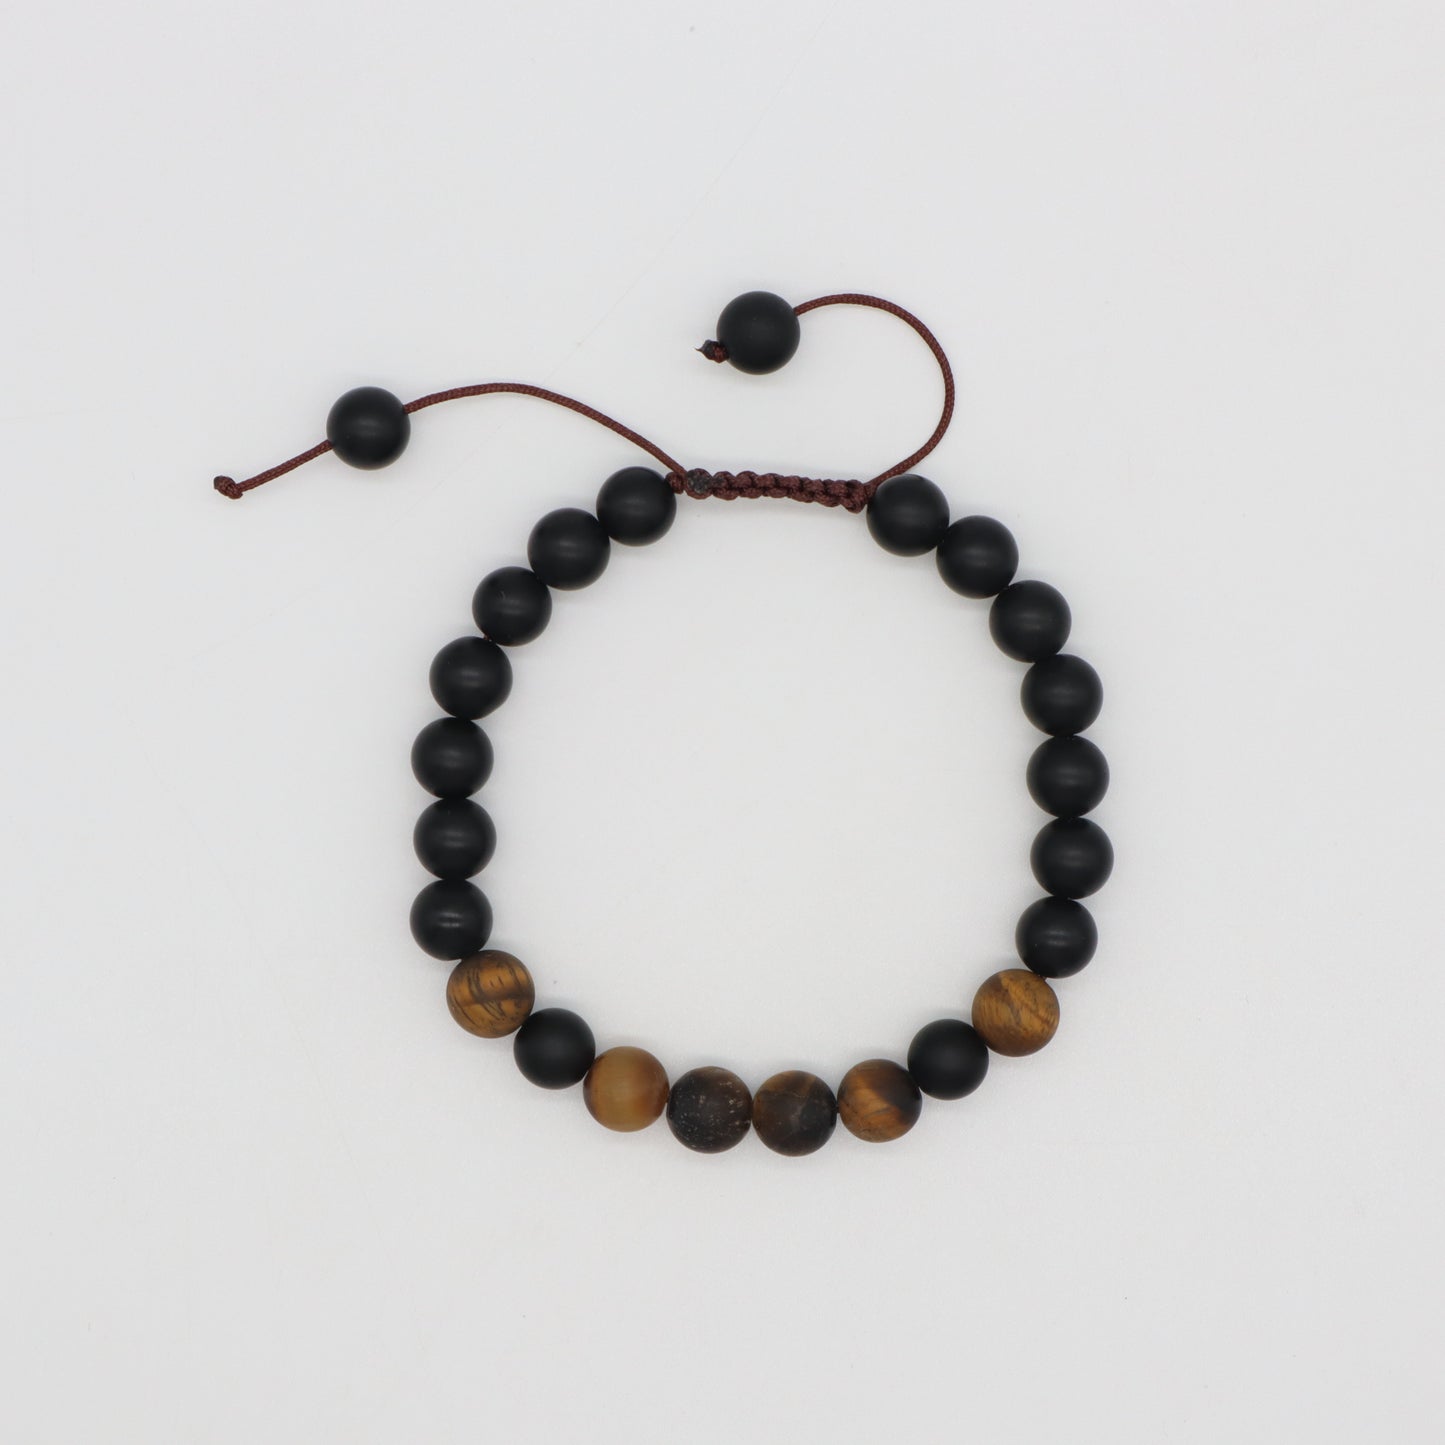 Handmade Custom 9mm Gemstone Healing Adjustable Natural Stone Woven Macrame Bracelet For Men Women